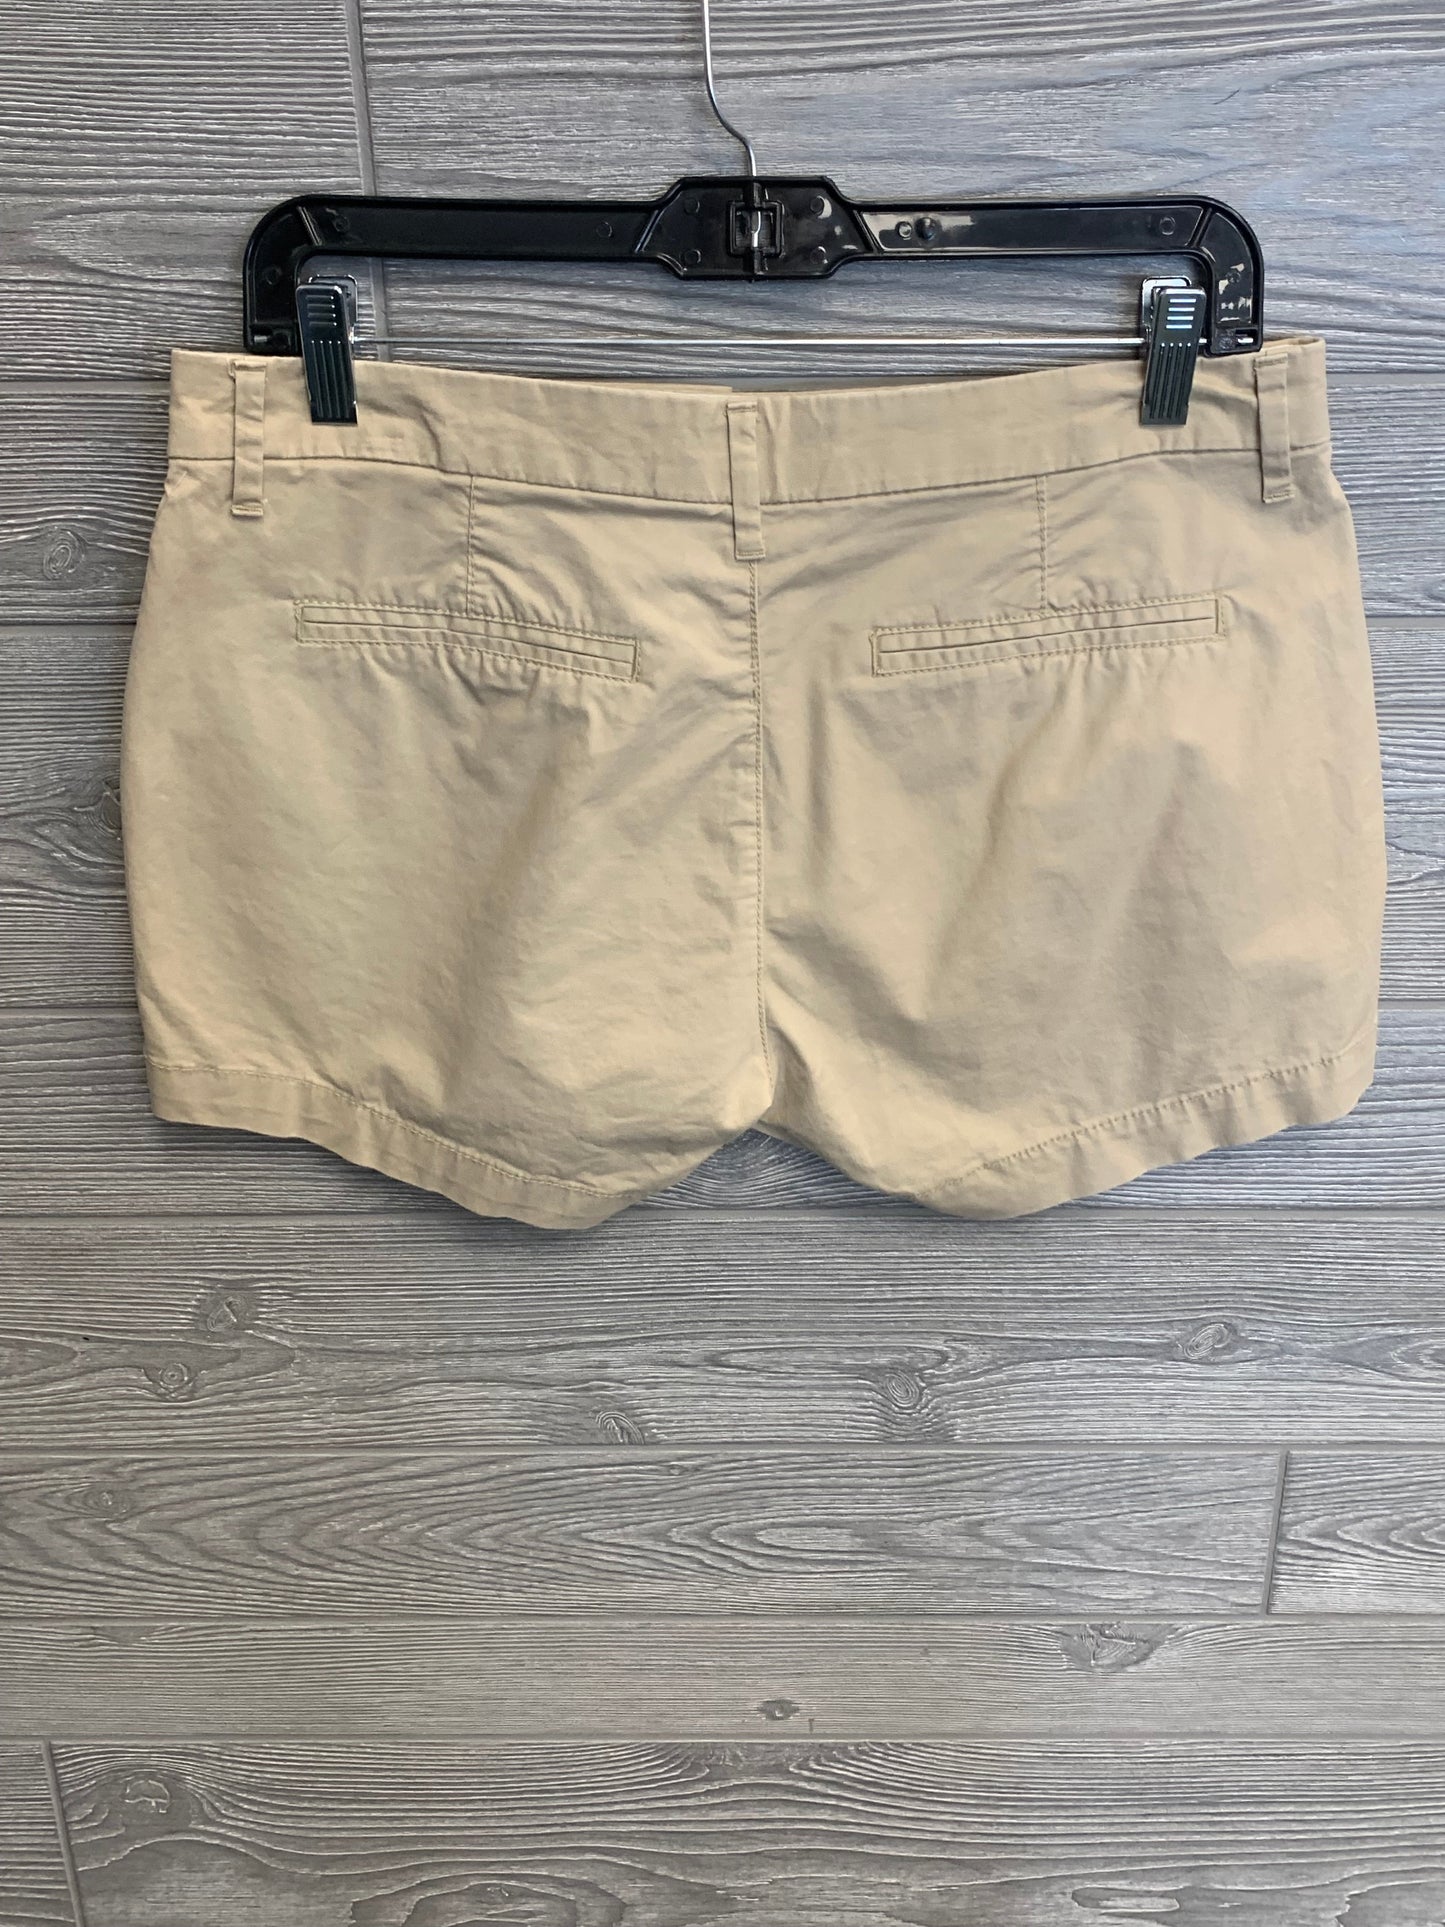 Tan Shorts Old Navy, Size 2